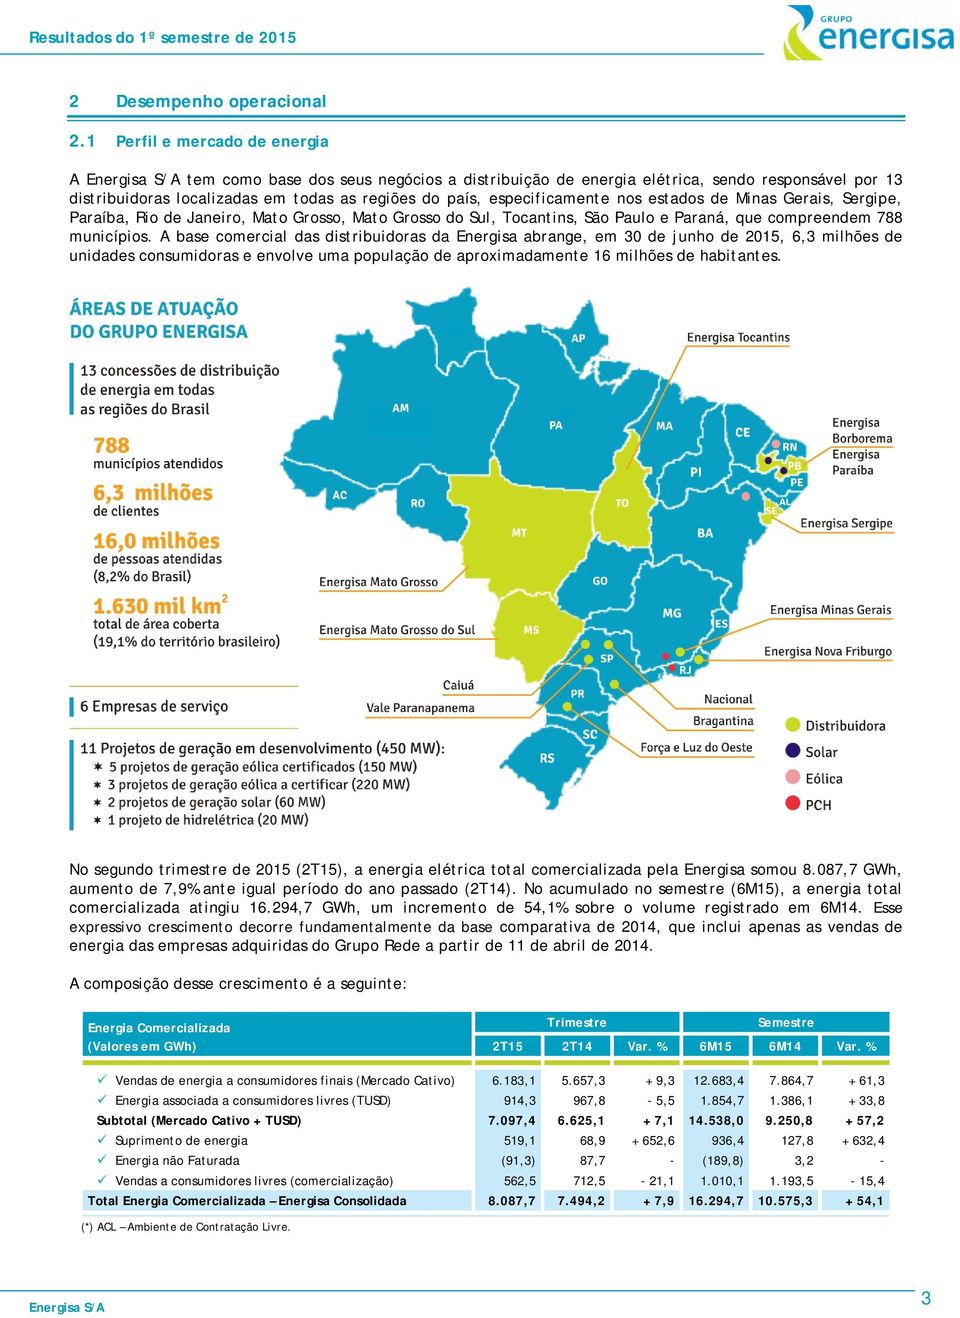 nos estados de Minas Gerais, Sergipe, Paraíba, Rio de Janeiro, Mato Grosso, Mato Grosso do Sul, Tocantins, São Paulo e Paraná, que compreendem 788 municípios.